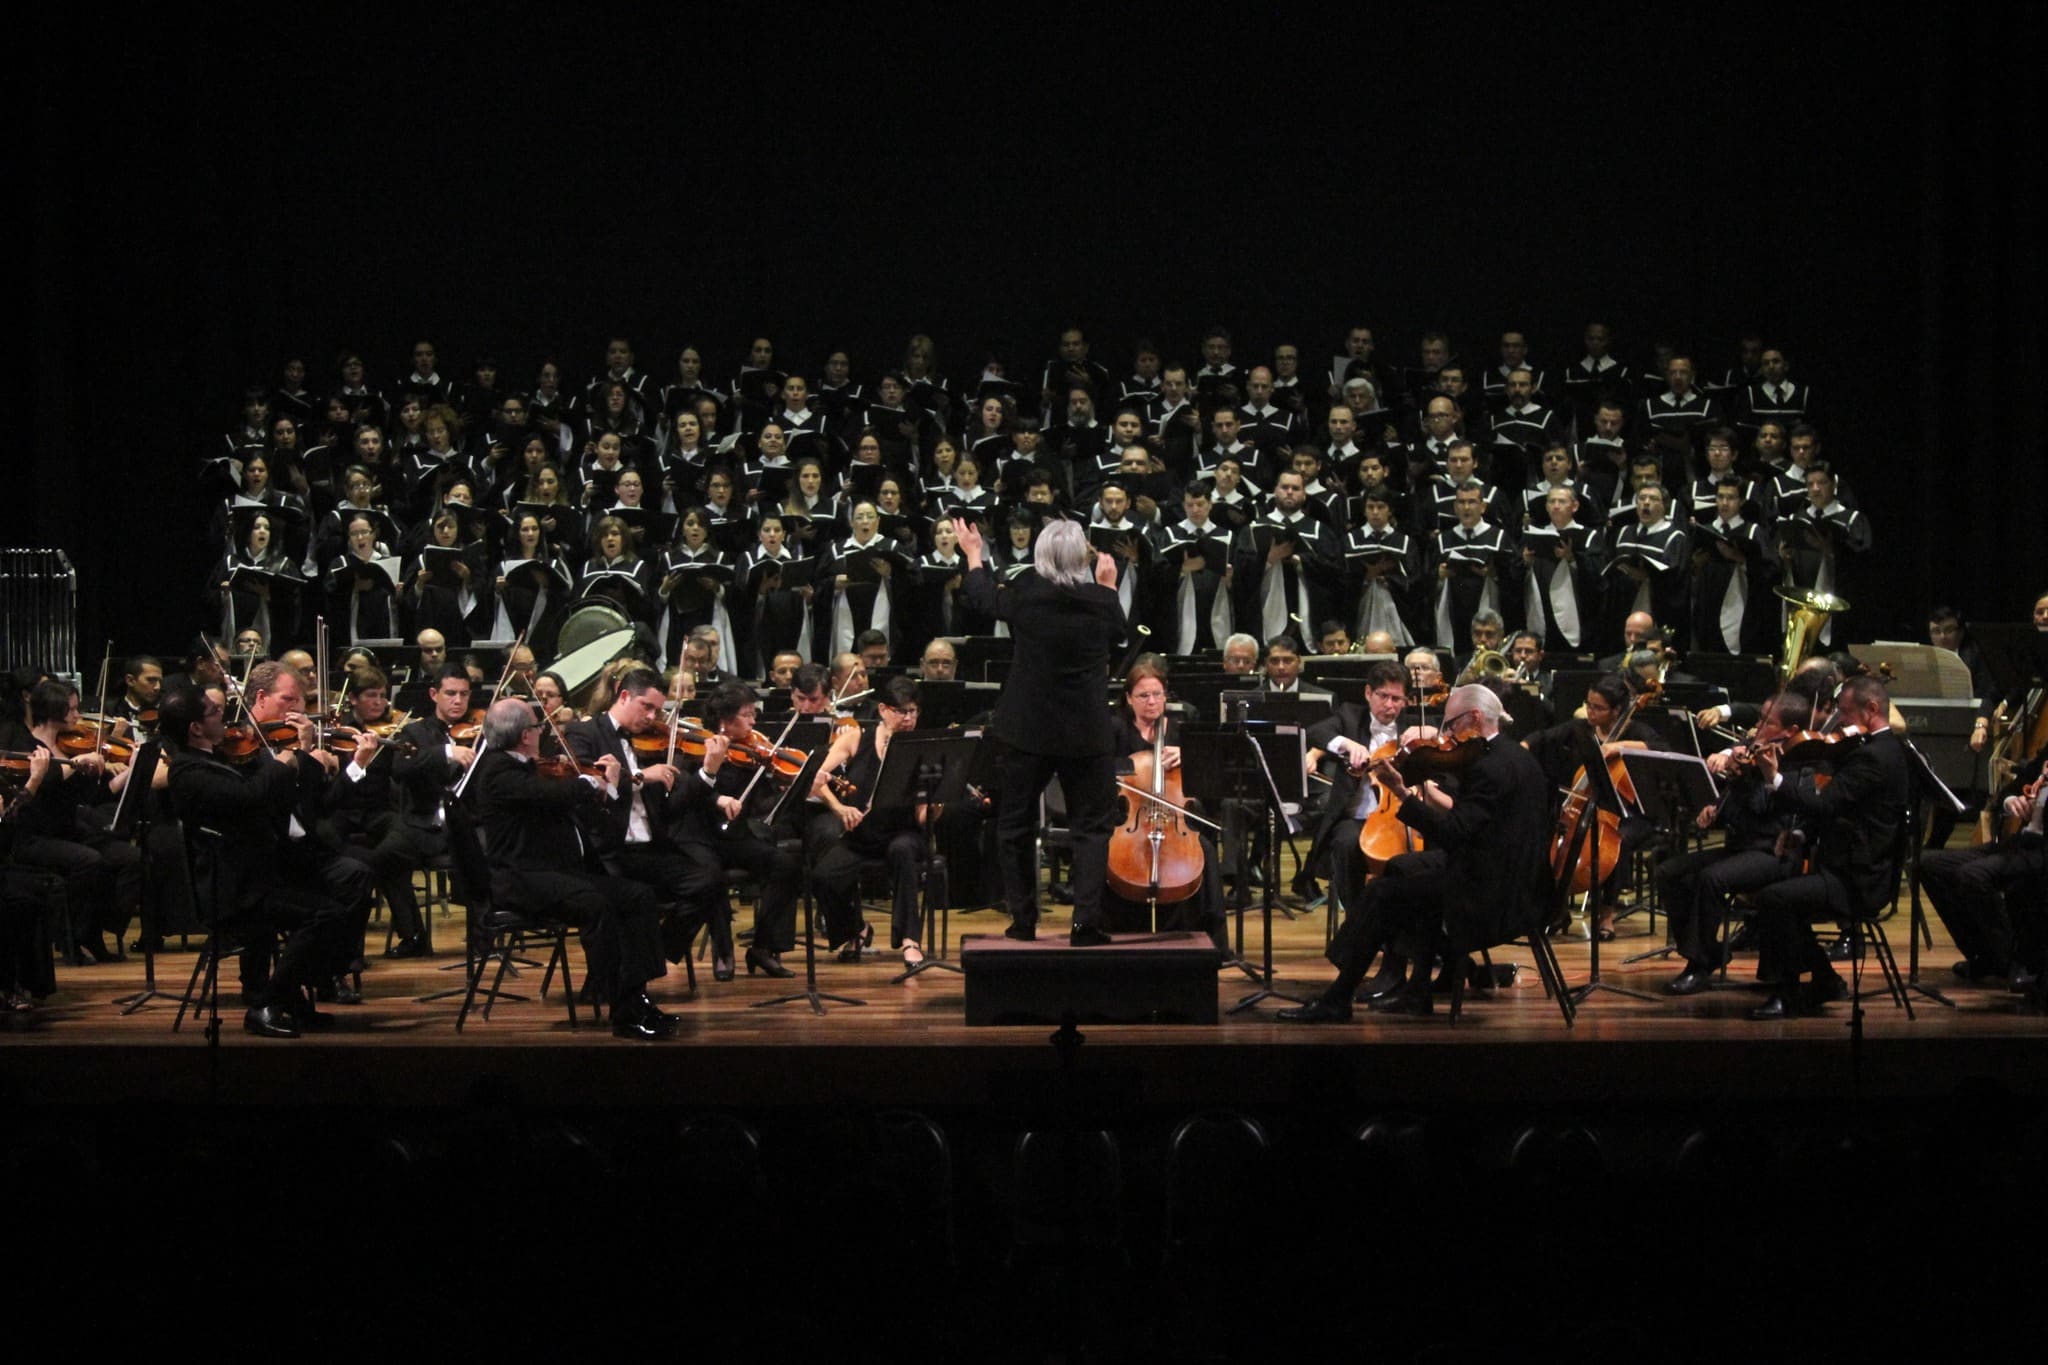 Denuncian problemas de “derechos laborales” de músicos de Orquesta Sinfónica durante gira presidencial a Zona Sur